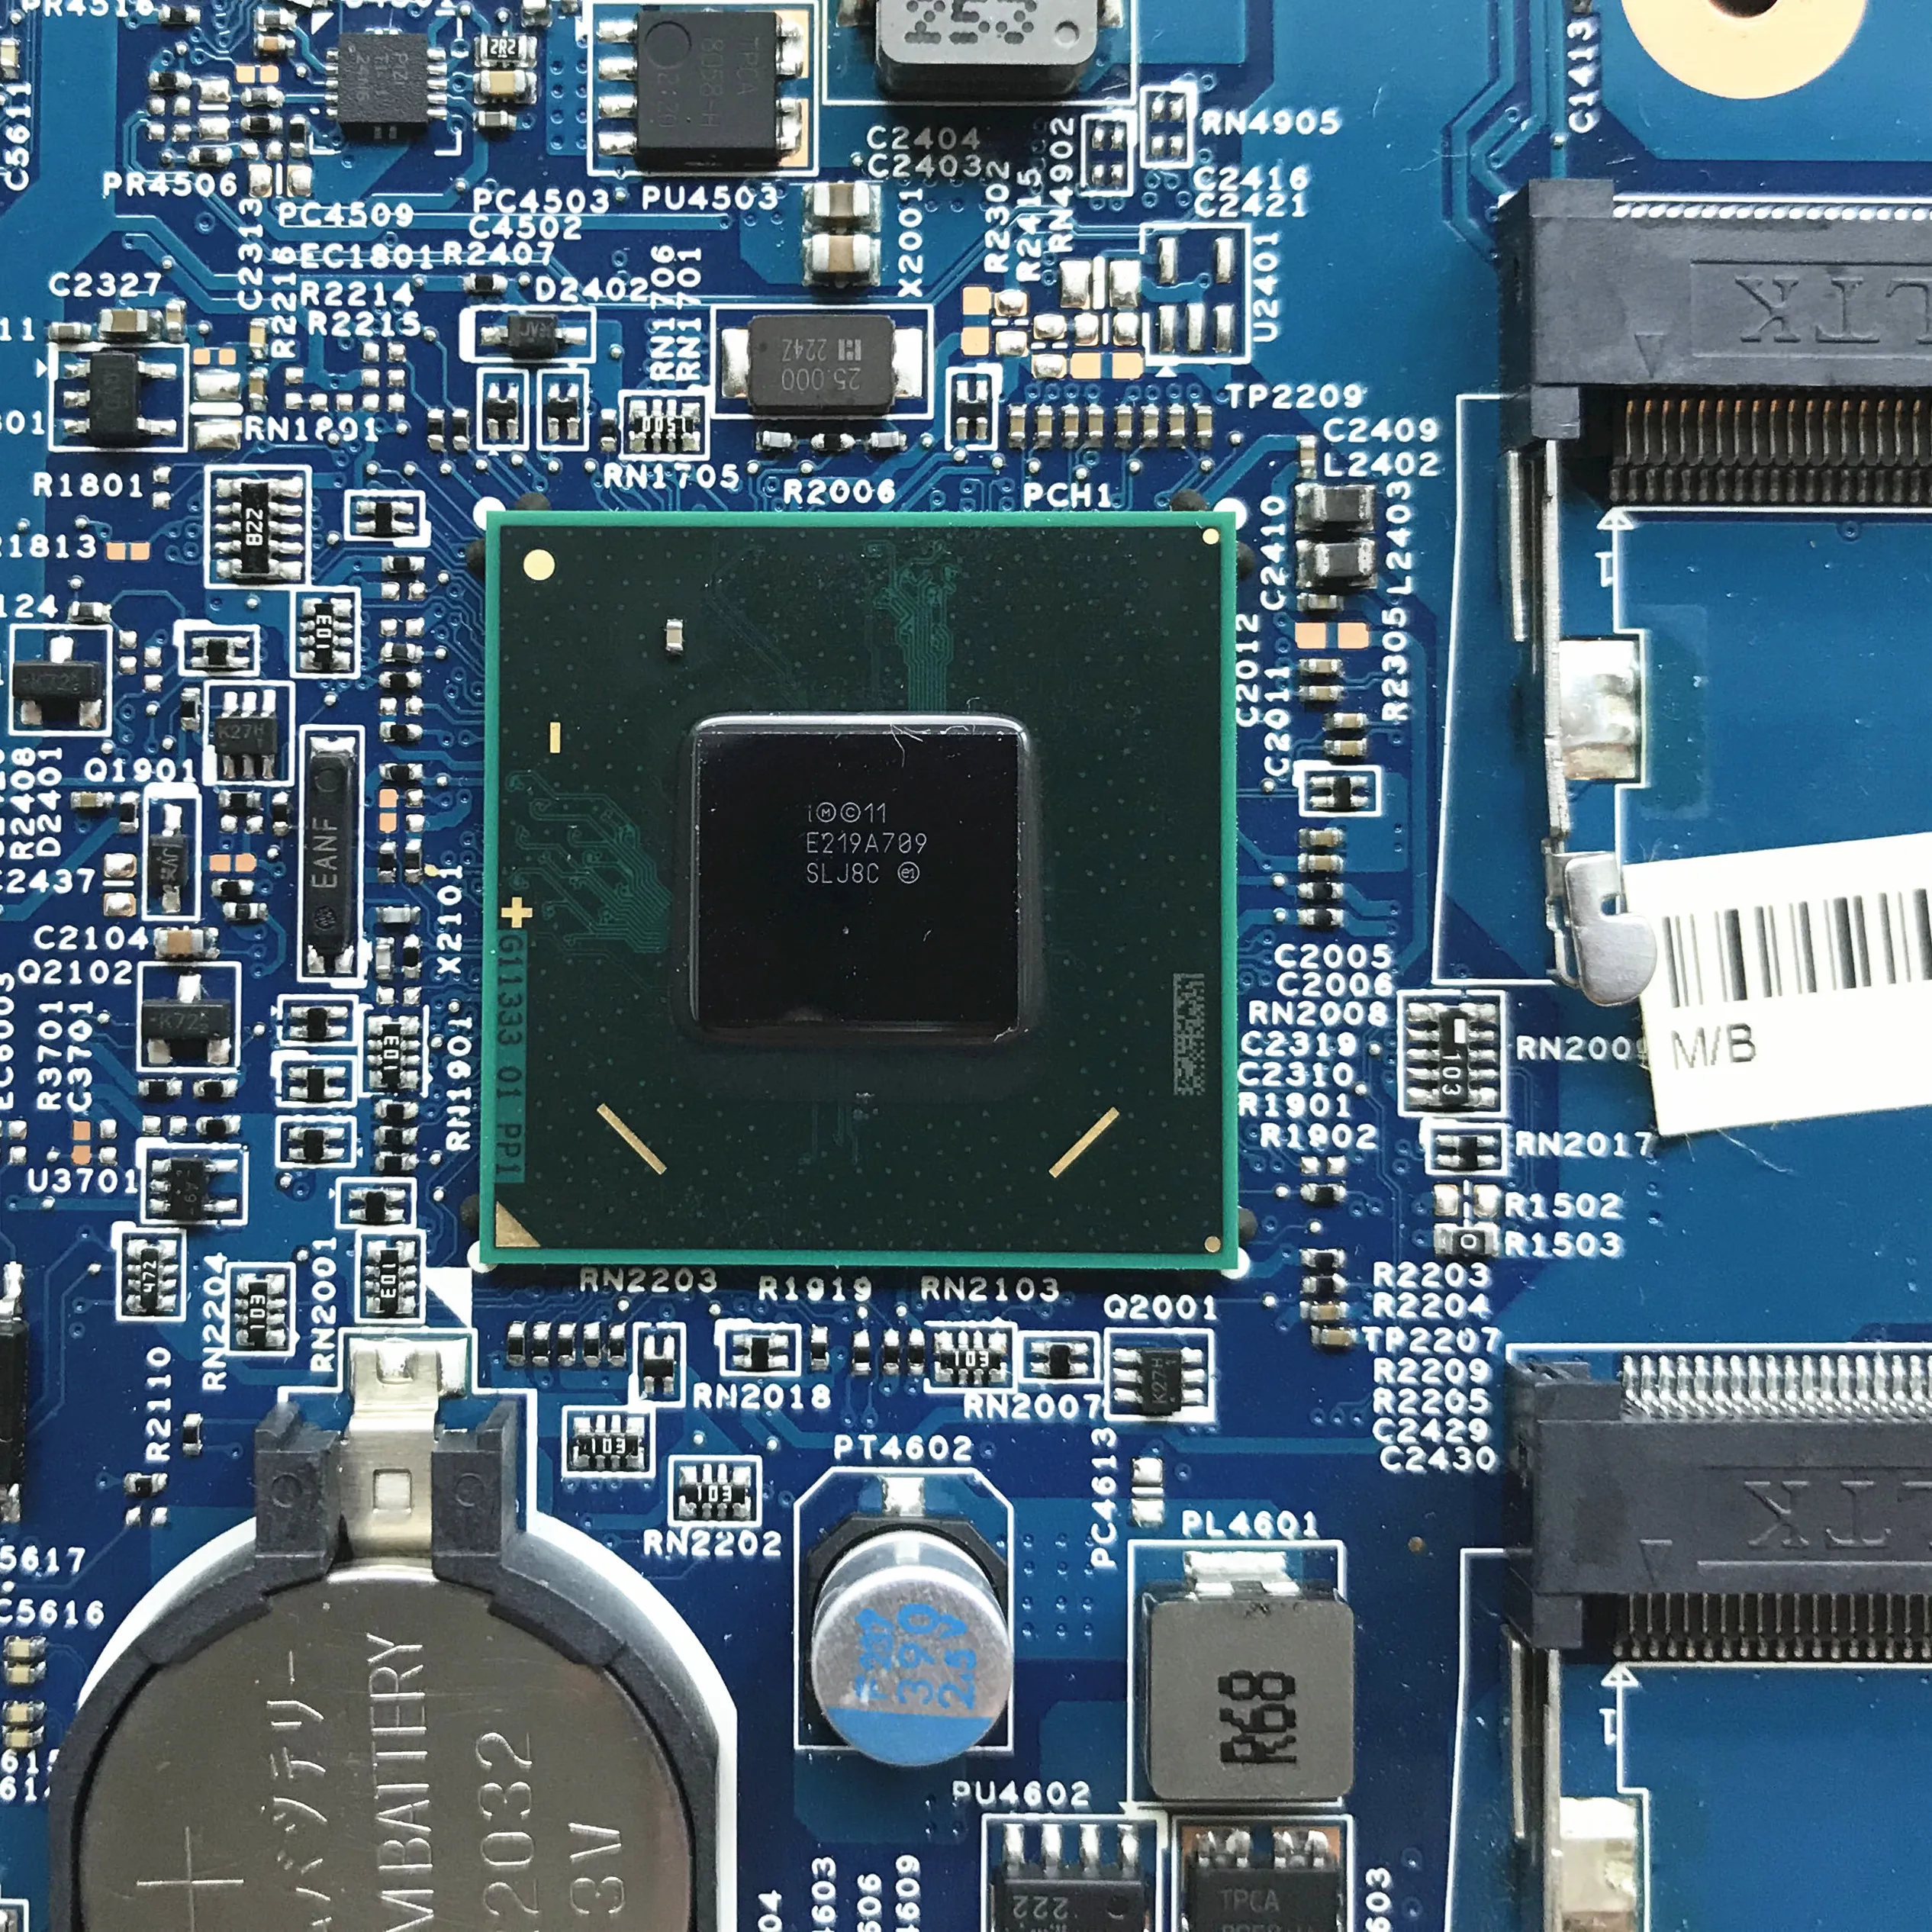 Za Acer Aspire V5-571 Prenosni računalnik z Matično ploščo Z i5-3317u HM77 NBM4911001 11309-4M 48.4TU05.04M DDR3 Testirani Hitro Ladjo